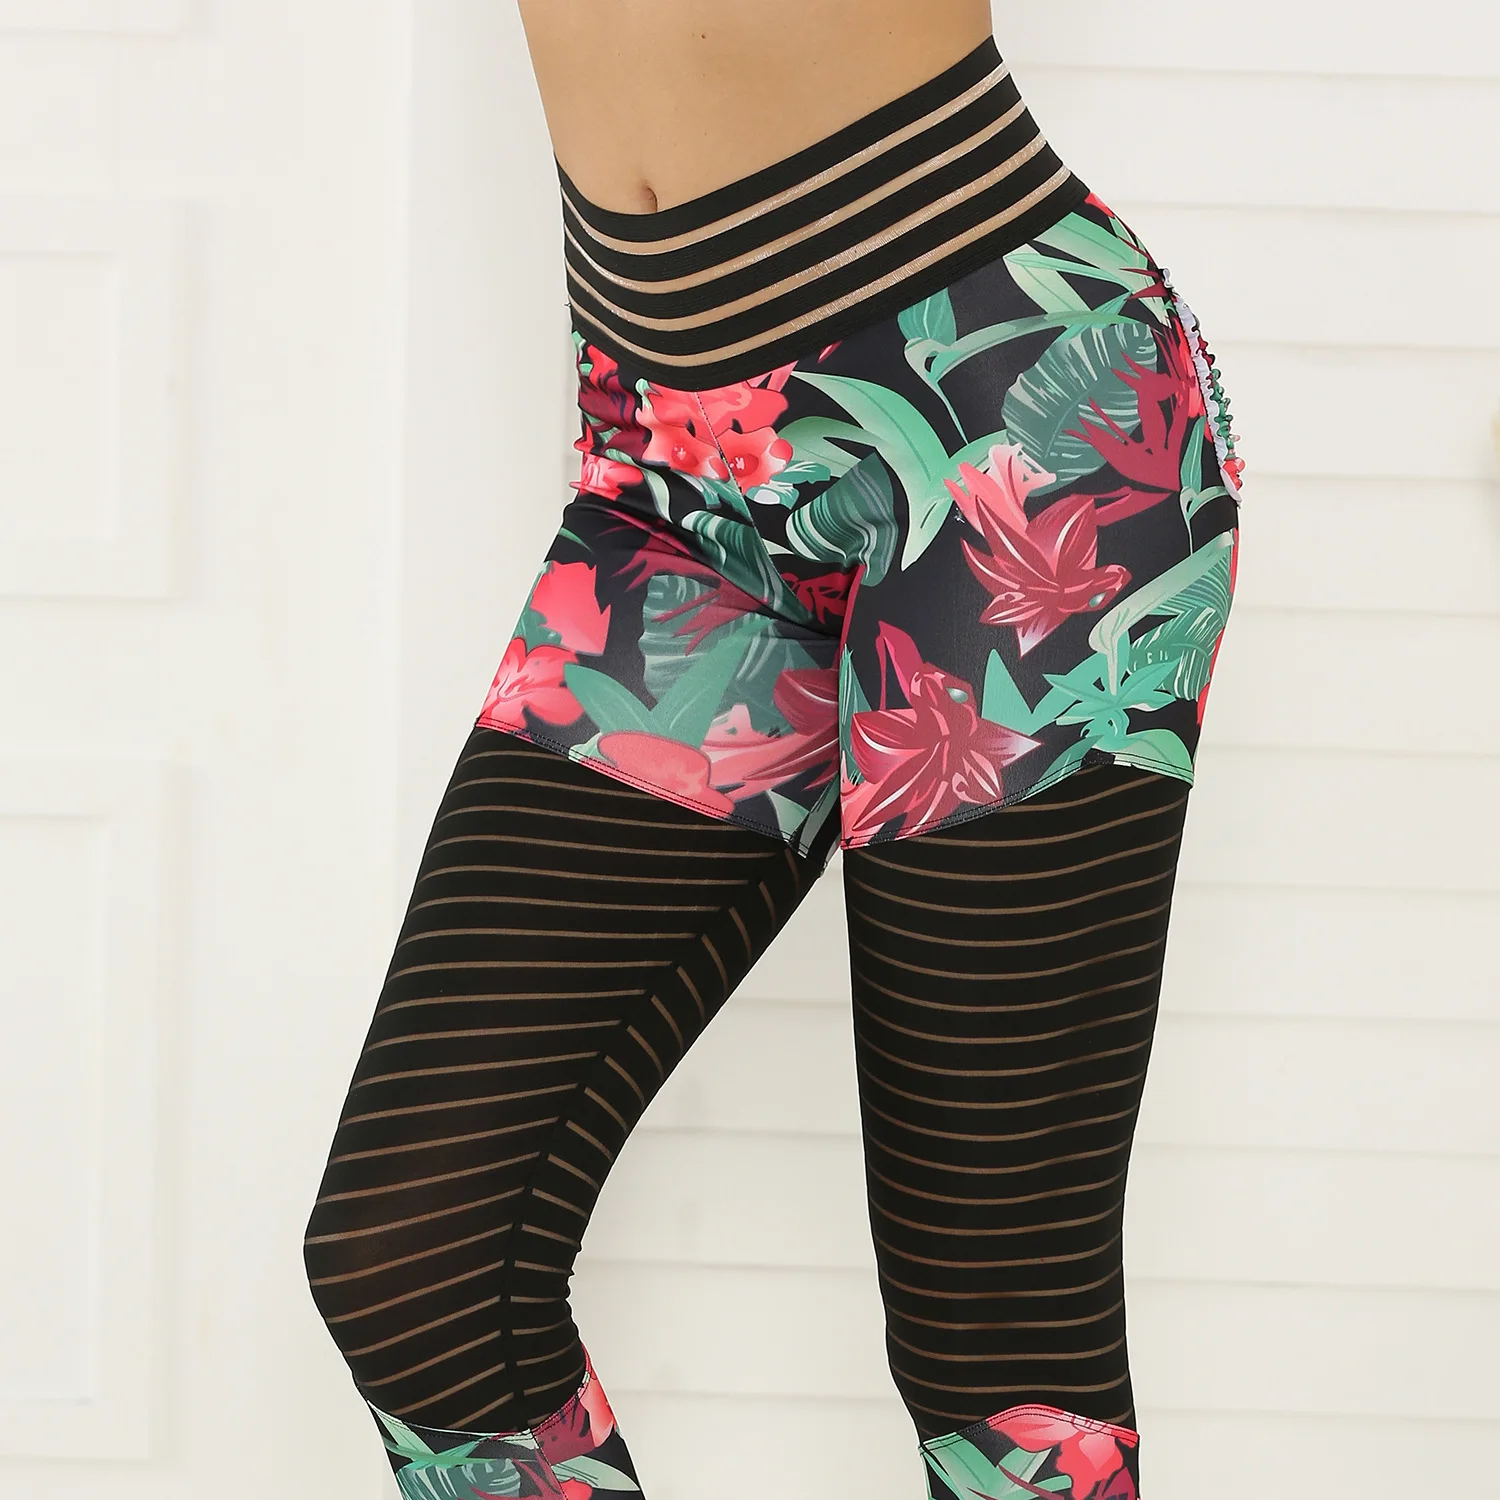 Штаны для фитнеса с принтом, оригинальные креативные леггинсы, 2019, высокая талия, бедра, высокая эластичность, спортивные женские, четыре